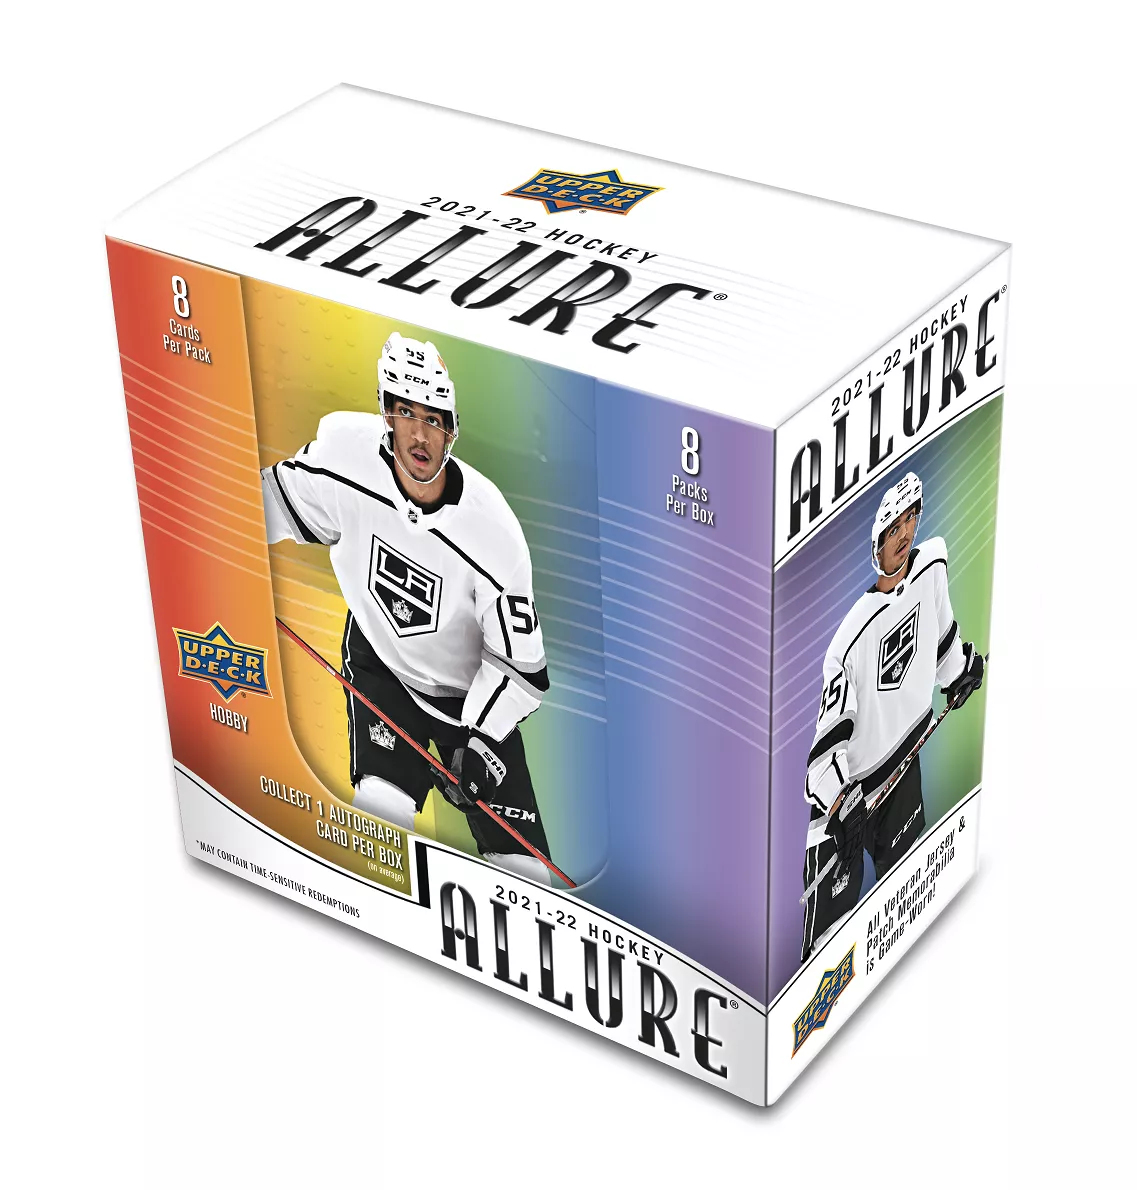 NHL pudełka karty hokejowe NHL 2021-22 Upper Deck Allure Hobby Box